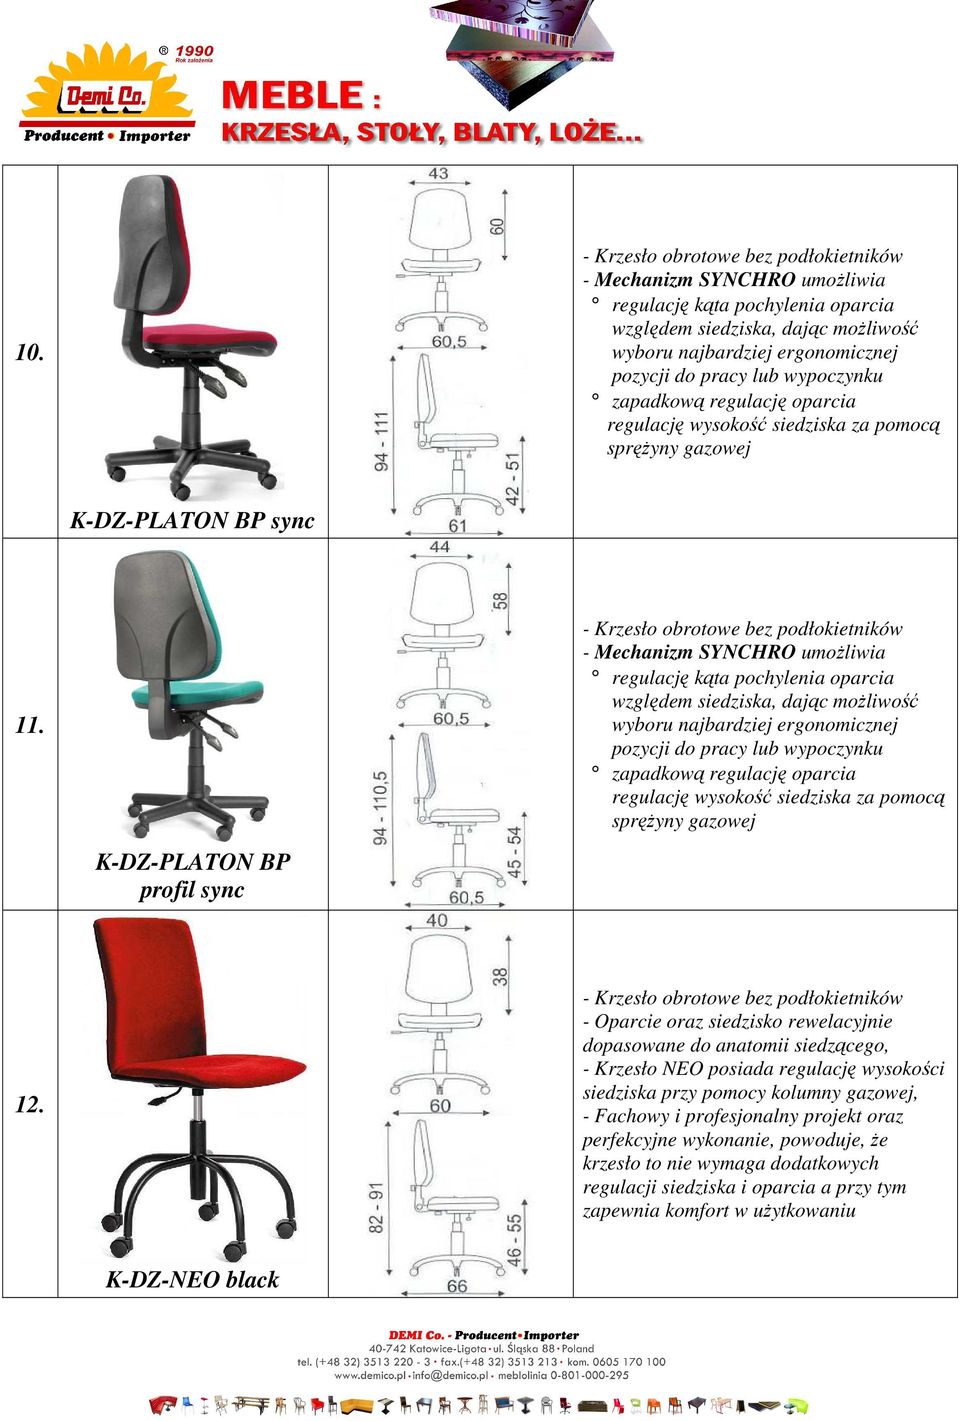 - Mechanizm SYNCHRO umożliwia regulację kąta pochylenia oparcia względem siedziska, dając możliwość wyboru najbardziej ergonomicznej pozycji do pracy lub wypoczynku zapadkową regulację oparcia